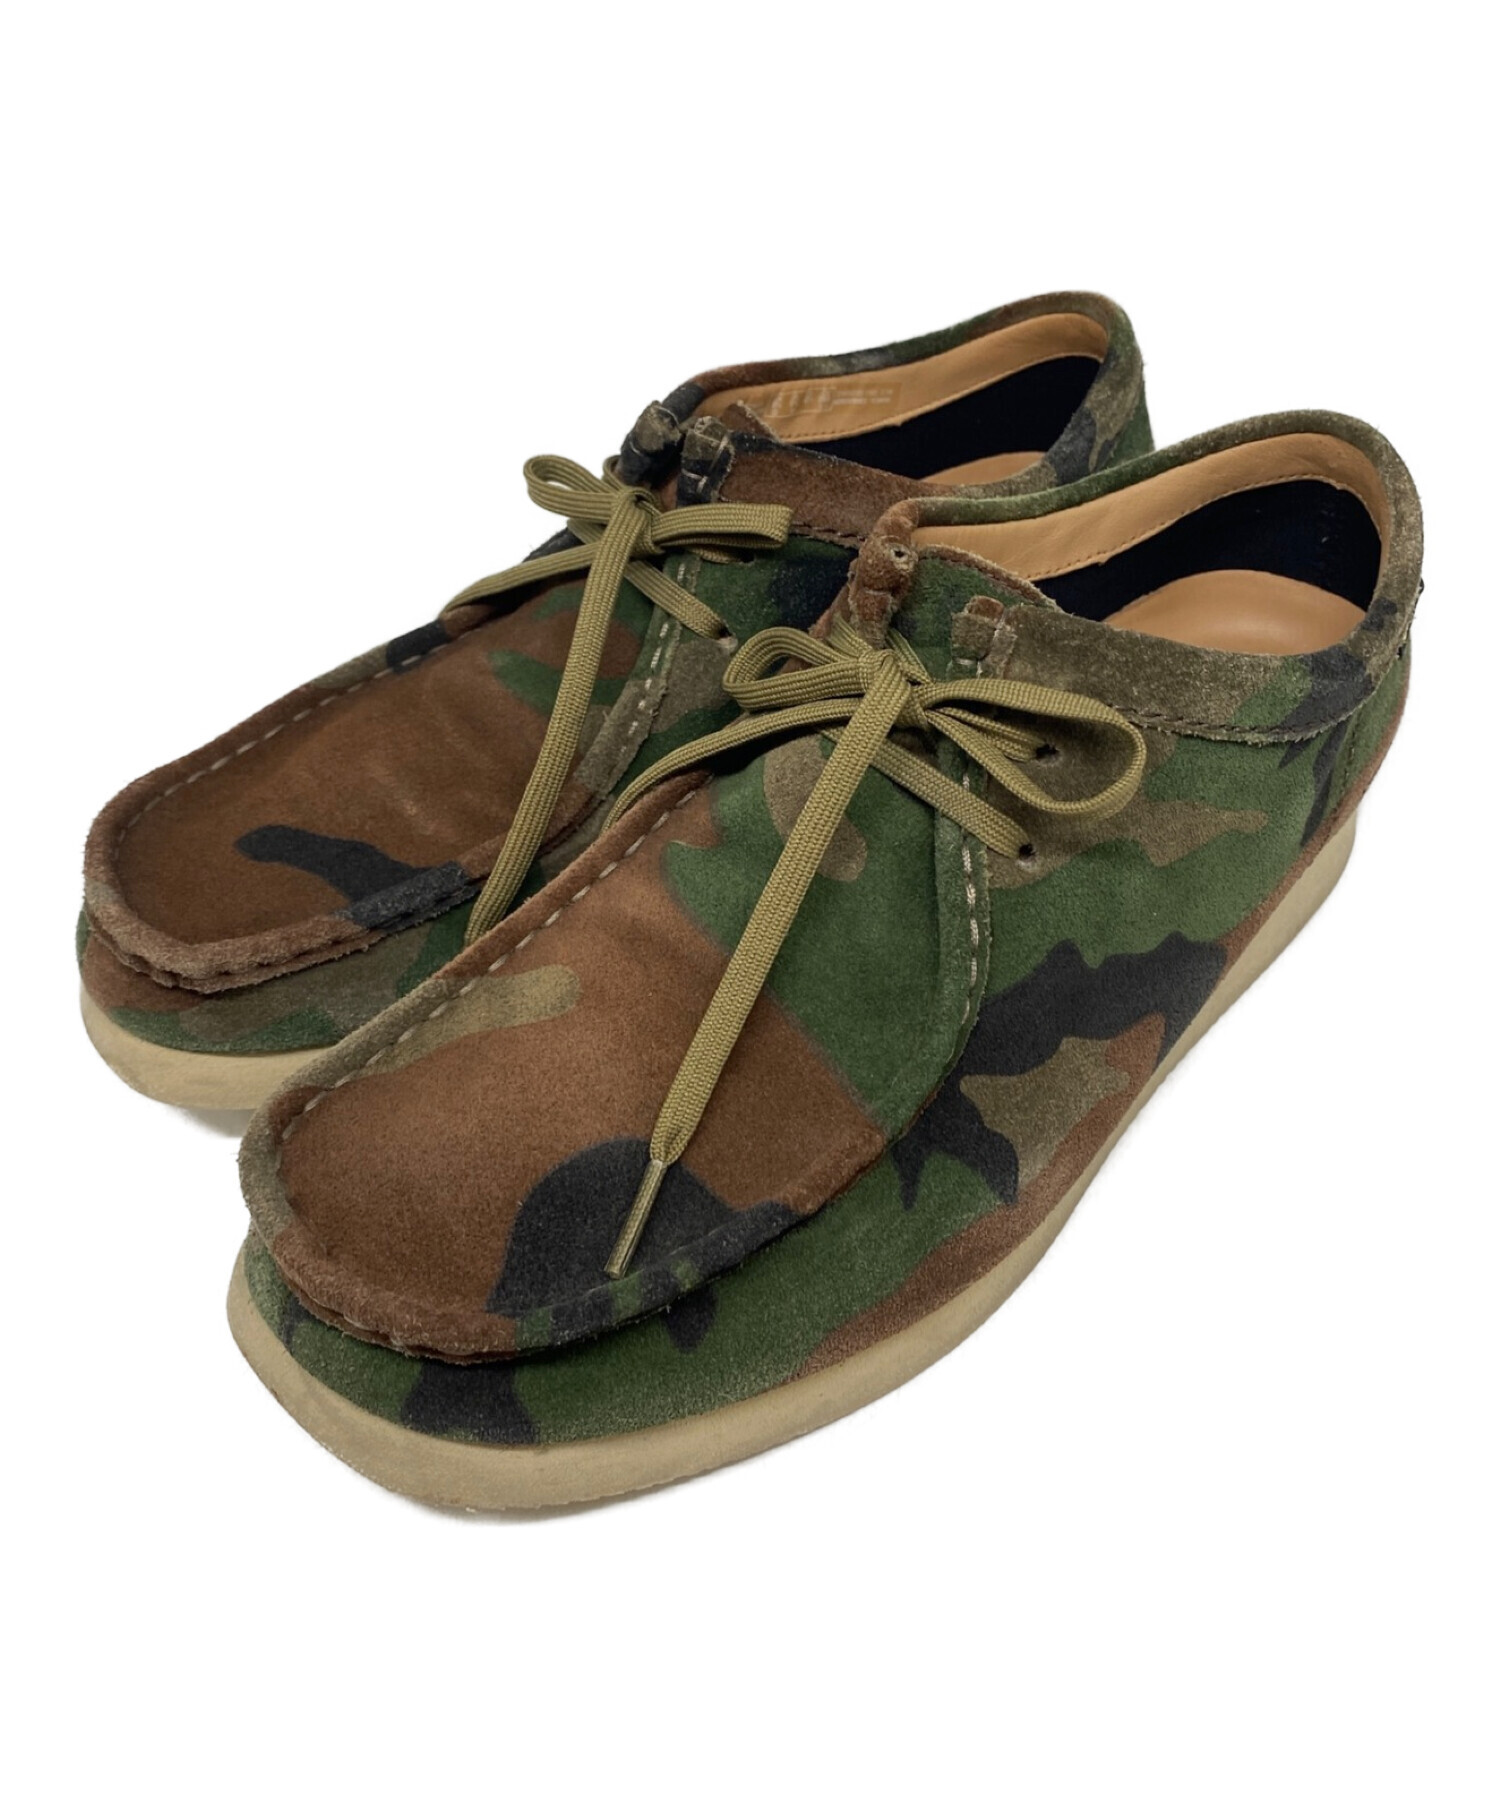 SUPREME (シュプリーム) CLARKS ORIGINAL (クラークスオリジナルズ) Woodland Camo Wallabee Boots  サイズ:UK8 1/2